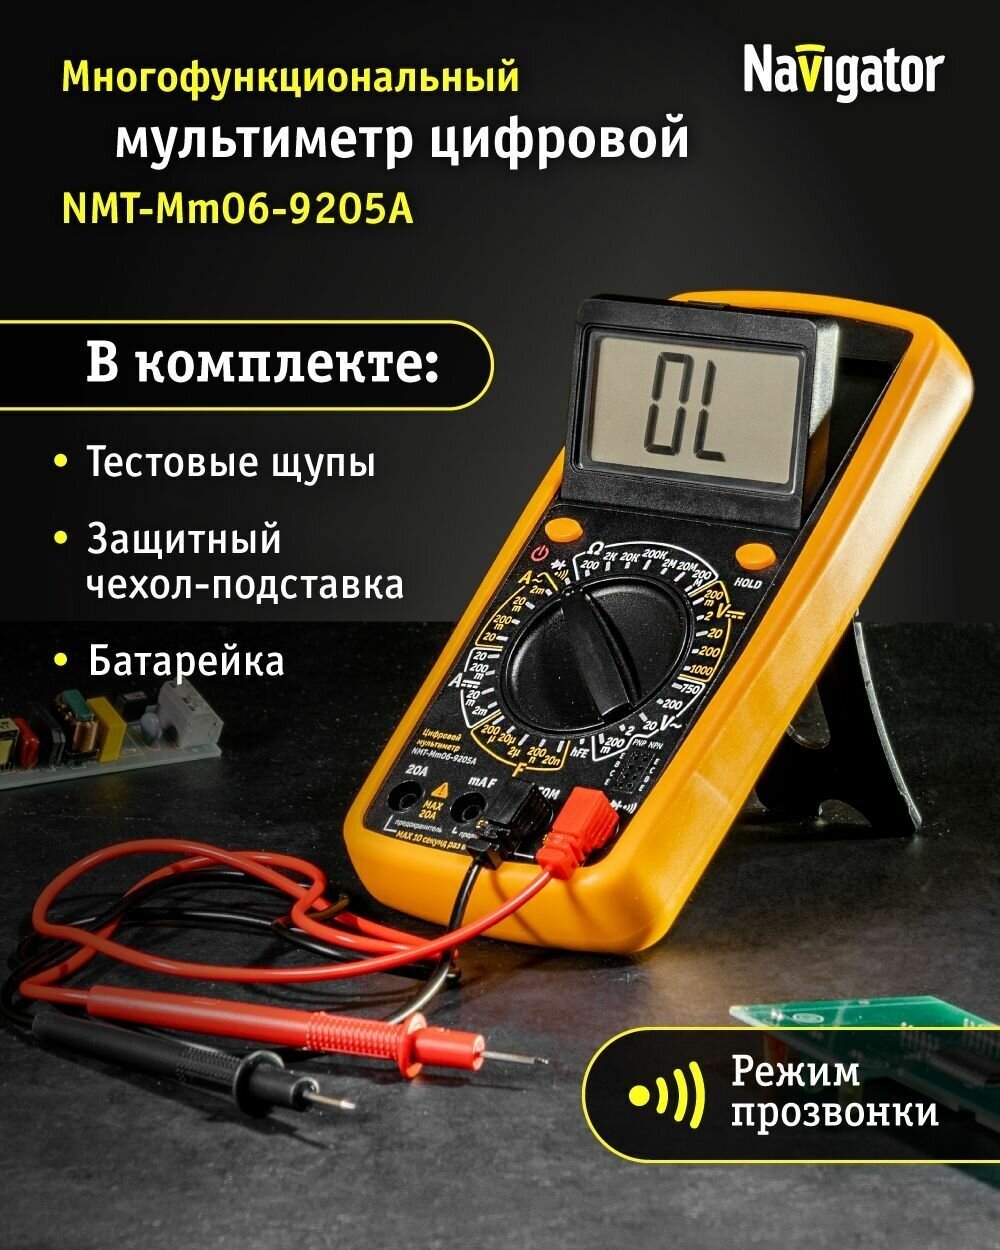 Мультиметр Navigator nmt-mm06-9205a 9205a 93 590 93590